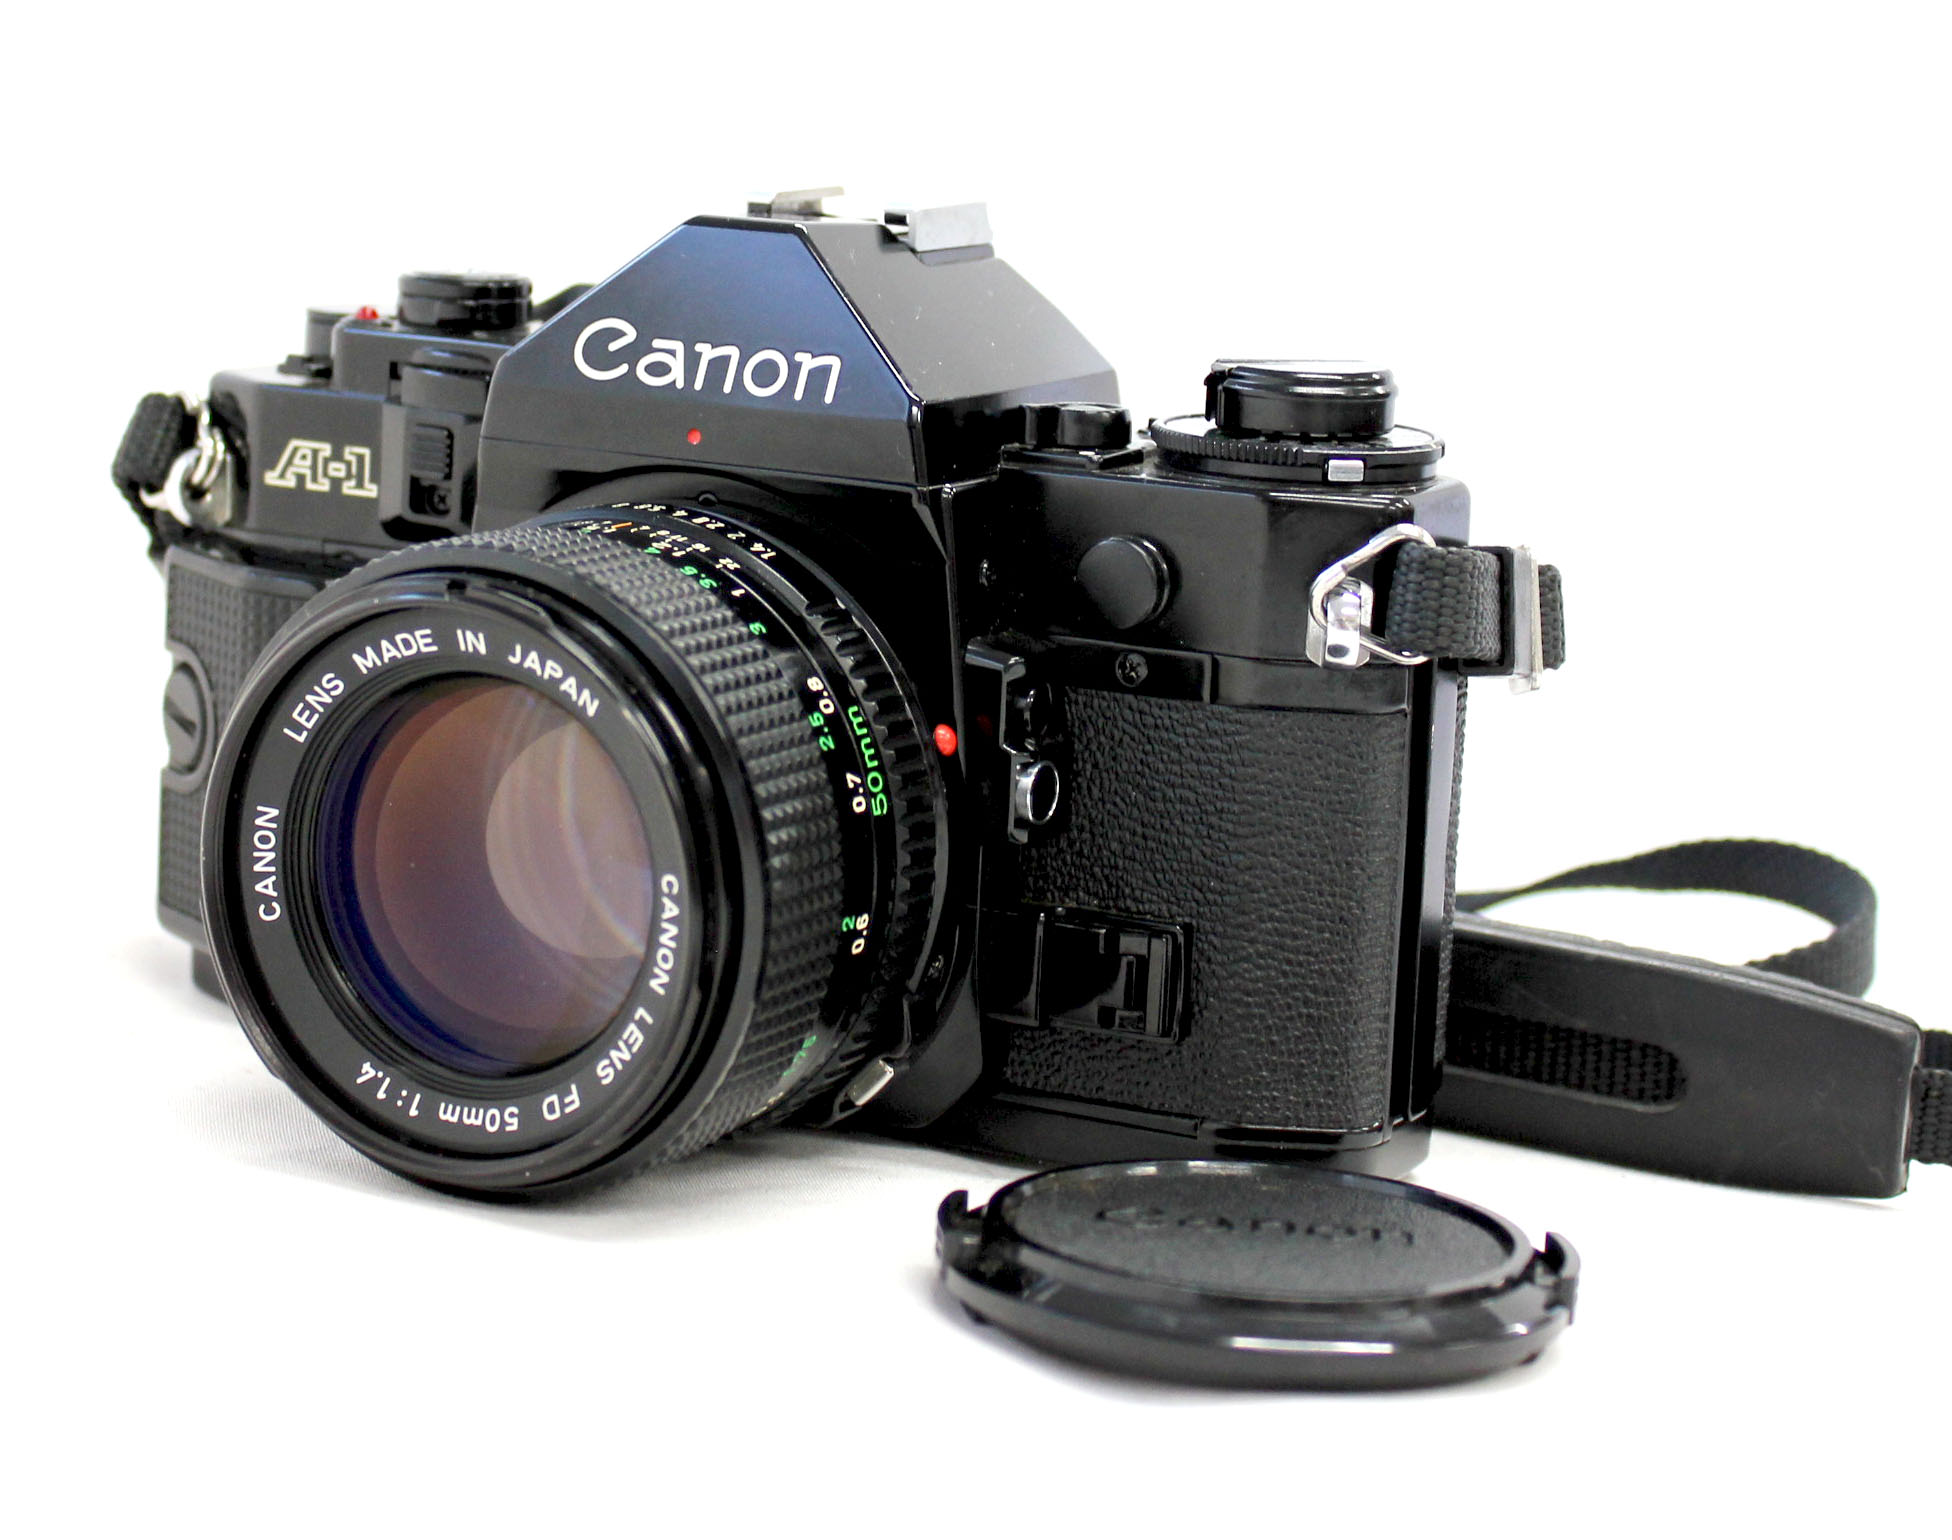 Canon A-1 New FD 50mm F1.4 - rehda.com